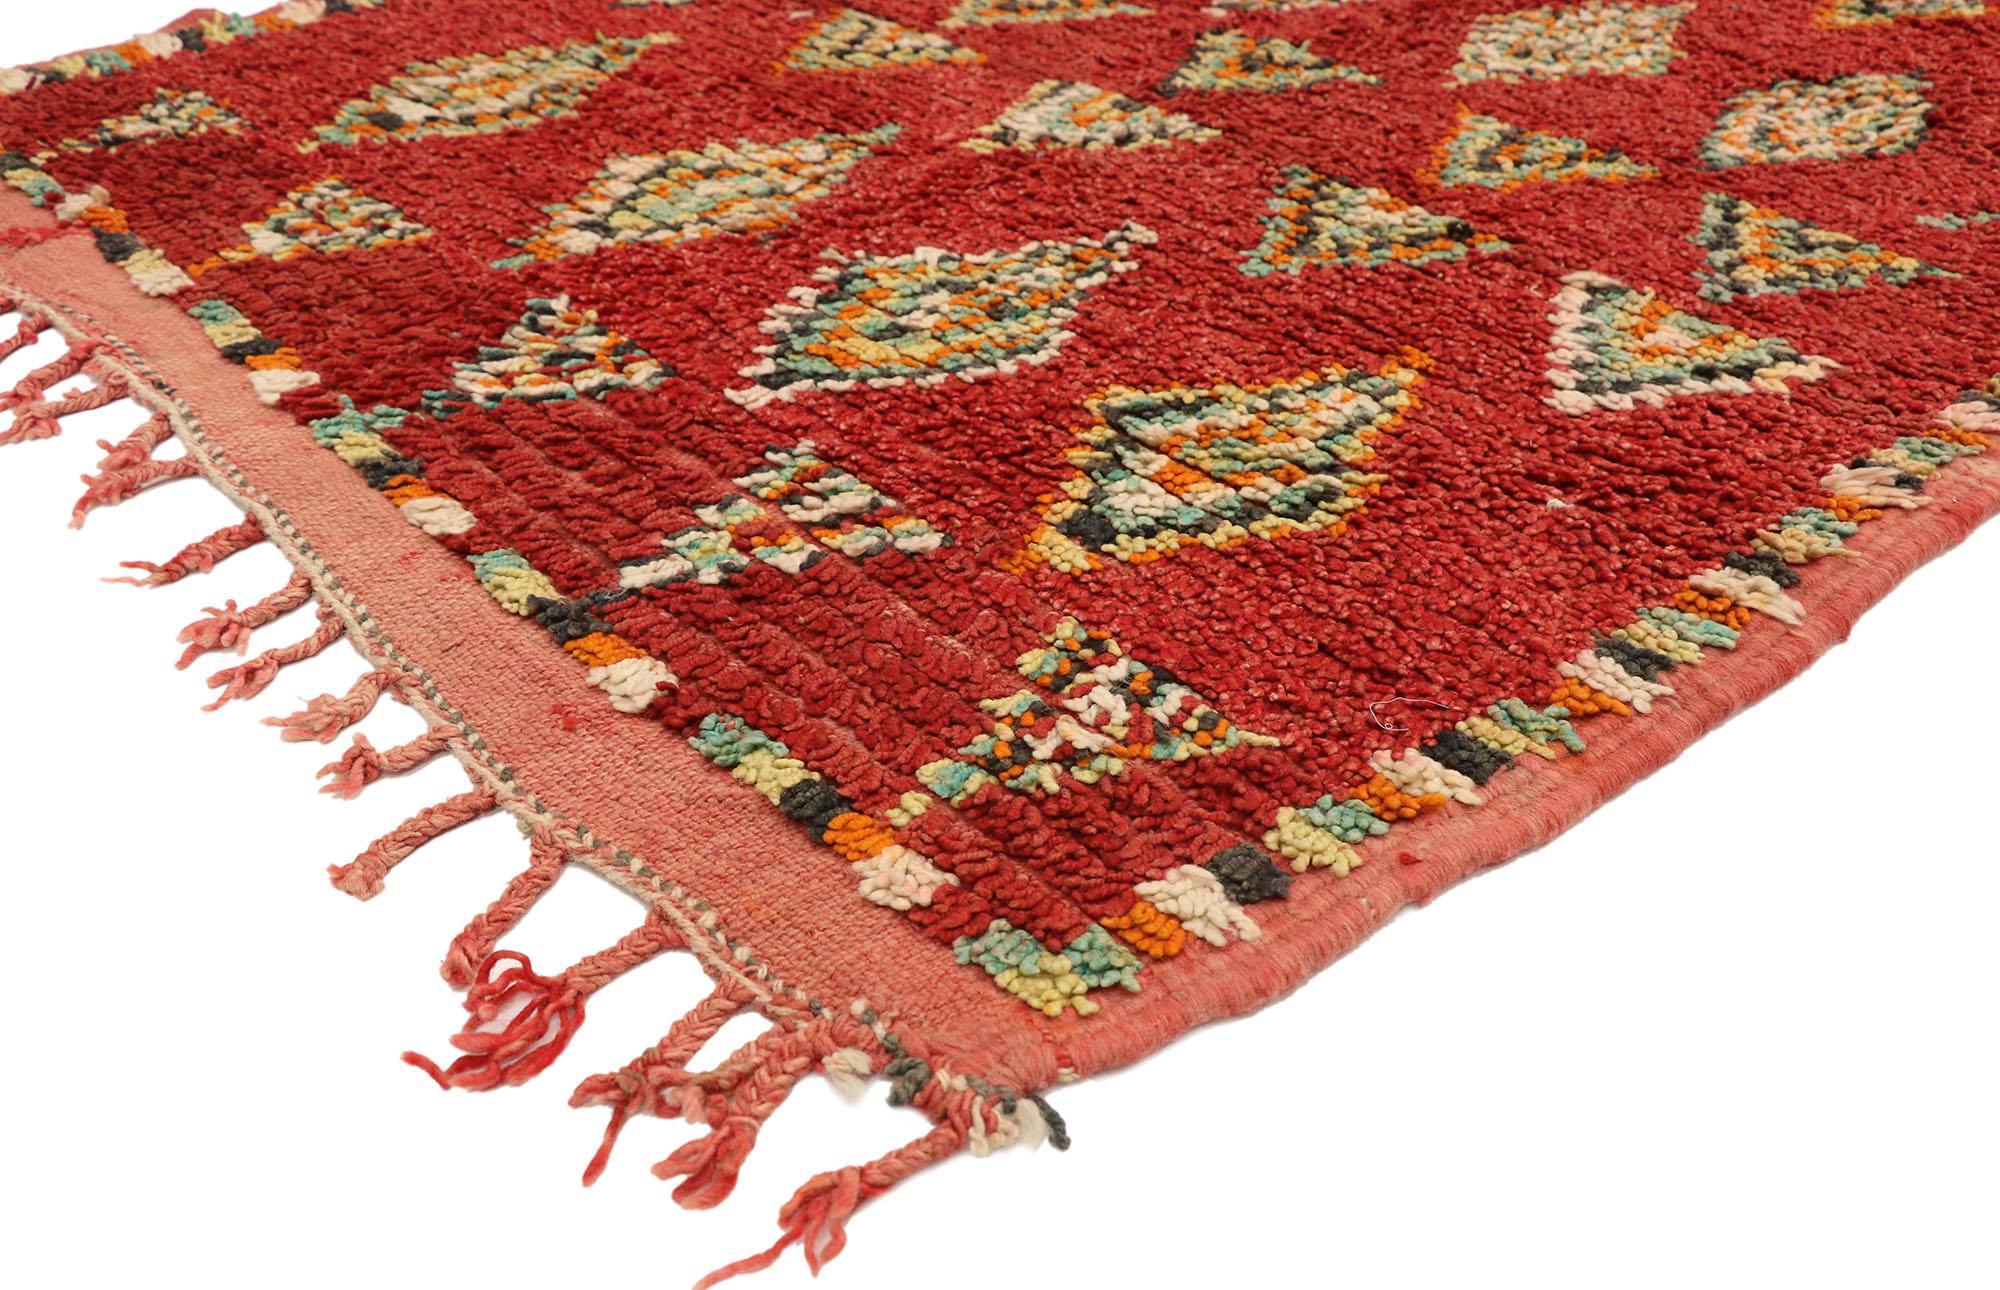 20168 Vintage Rouge Marocain Azilal Rug Runner, 04'00 x 12'01. Les tapis rouges marocains Azilal sont des exemples exquis de l'artisanat traditionnel marocain, méticuleusement façonnés par d'habiles artisans berbères originaires de la région